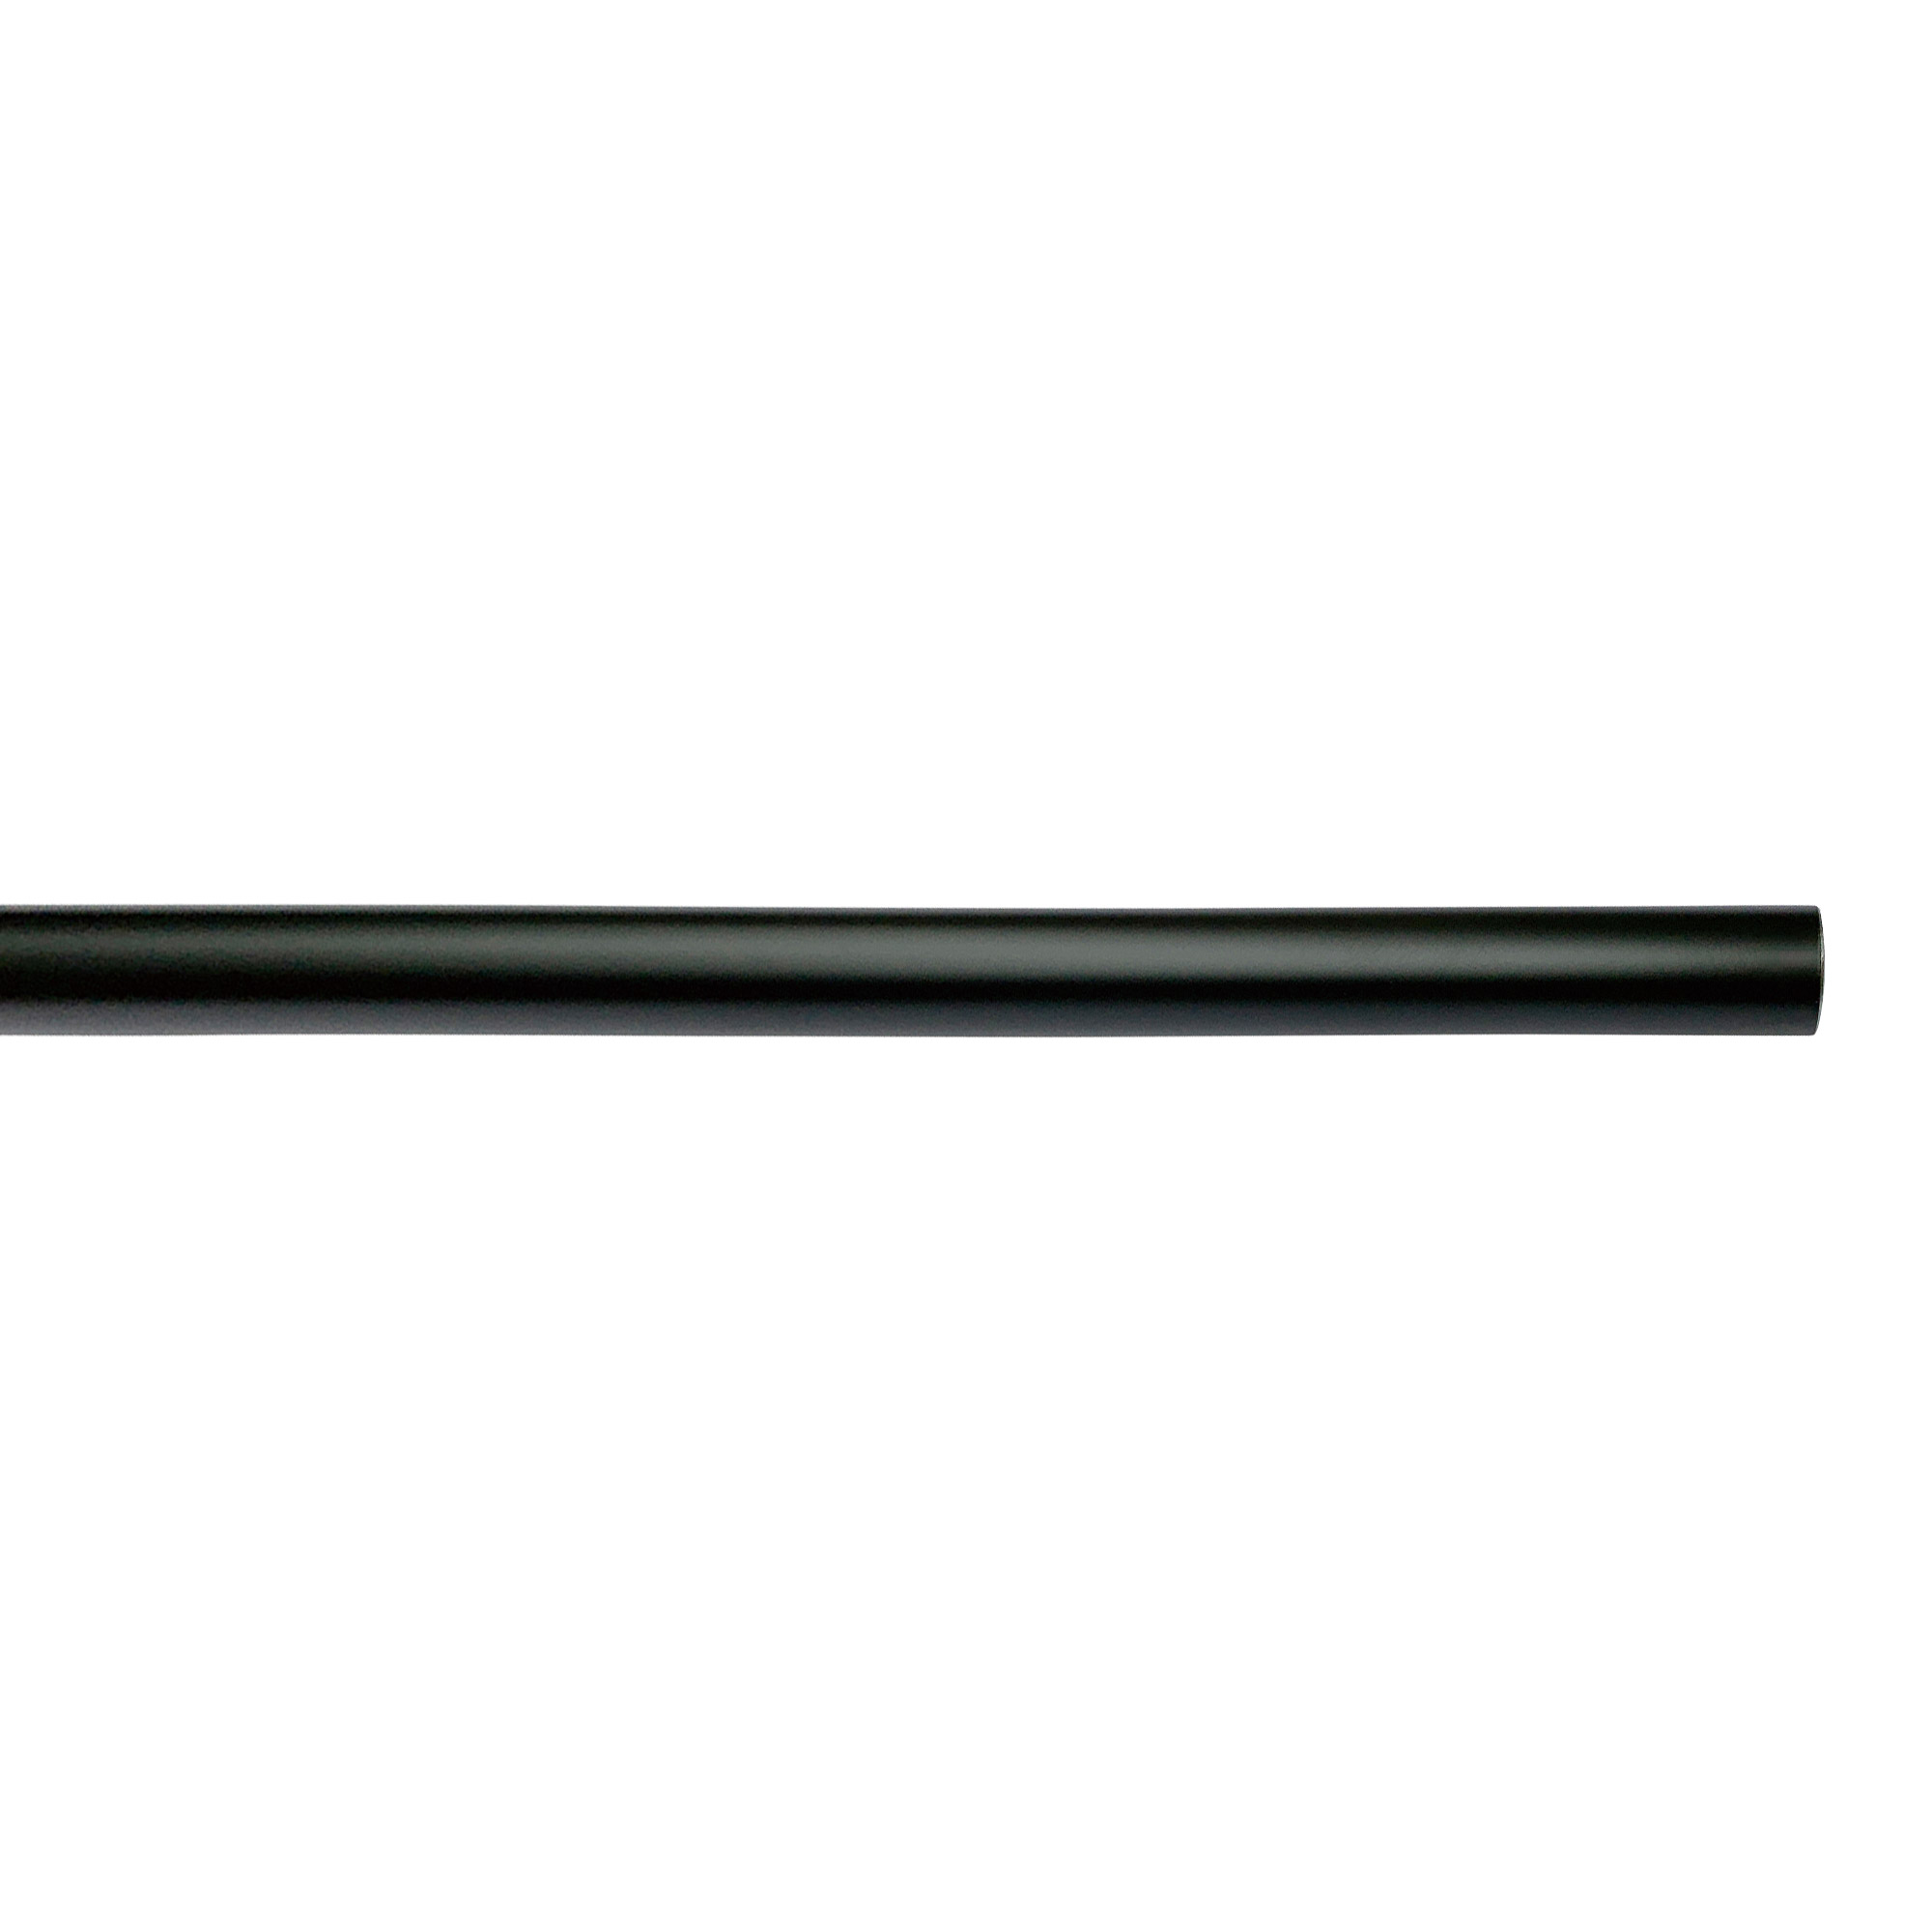 アイアンハンガーパイプ コの字型-棚下吊タイプ H100 ブラック PS-HB008-51-G141 水平パイプは3サイズから選択可能です